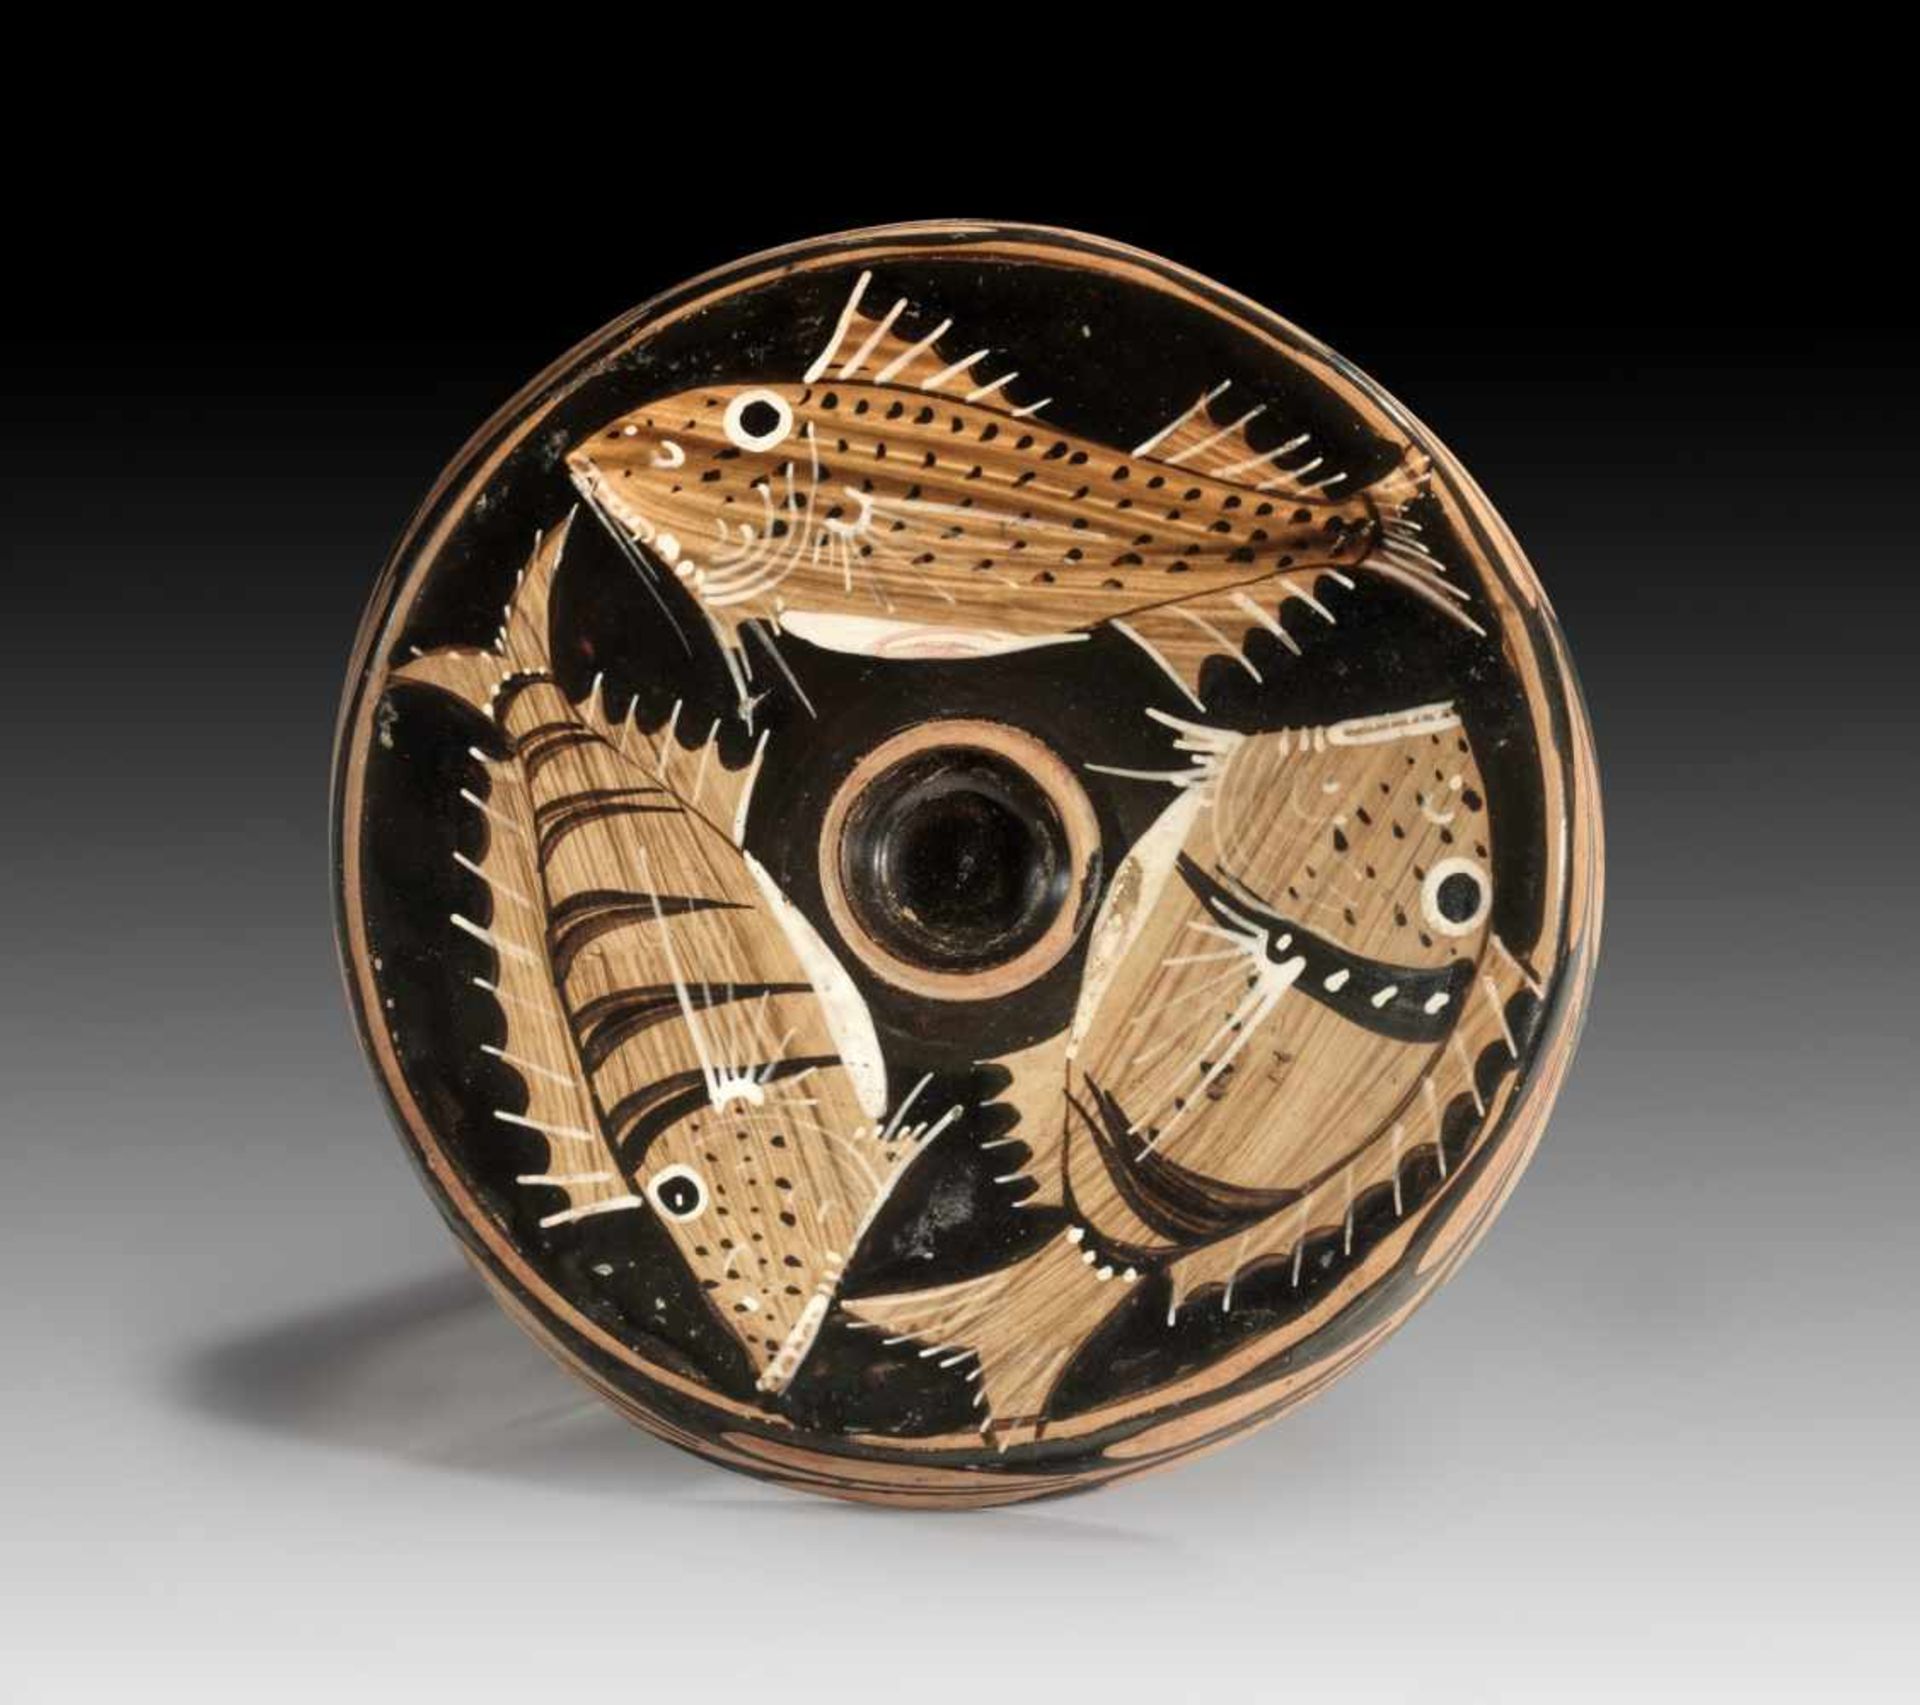 Kampanischer Fischteller der Dotted Stripe-Gruppe. 3. Viertel 4. Jh. v. Chr. H 4,5cm, ø 19,2cm. - Bild 2 aus 2